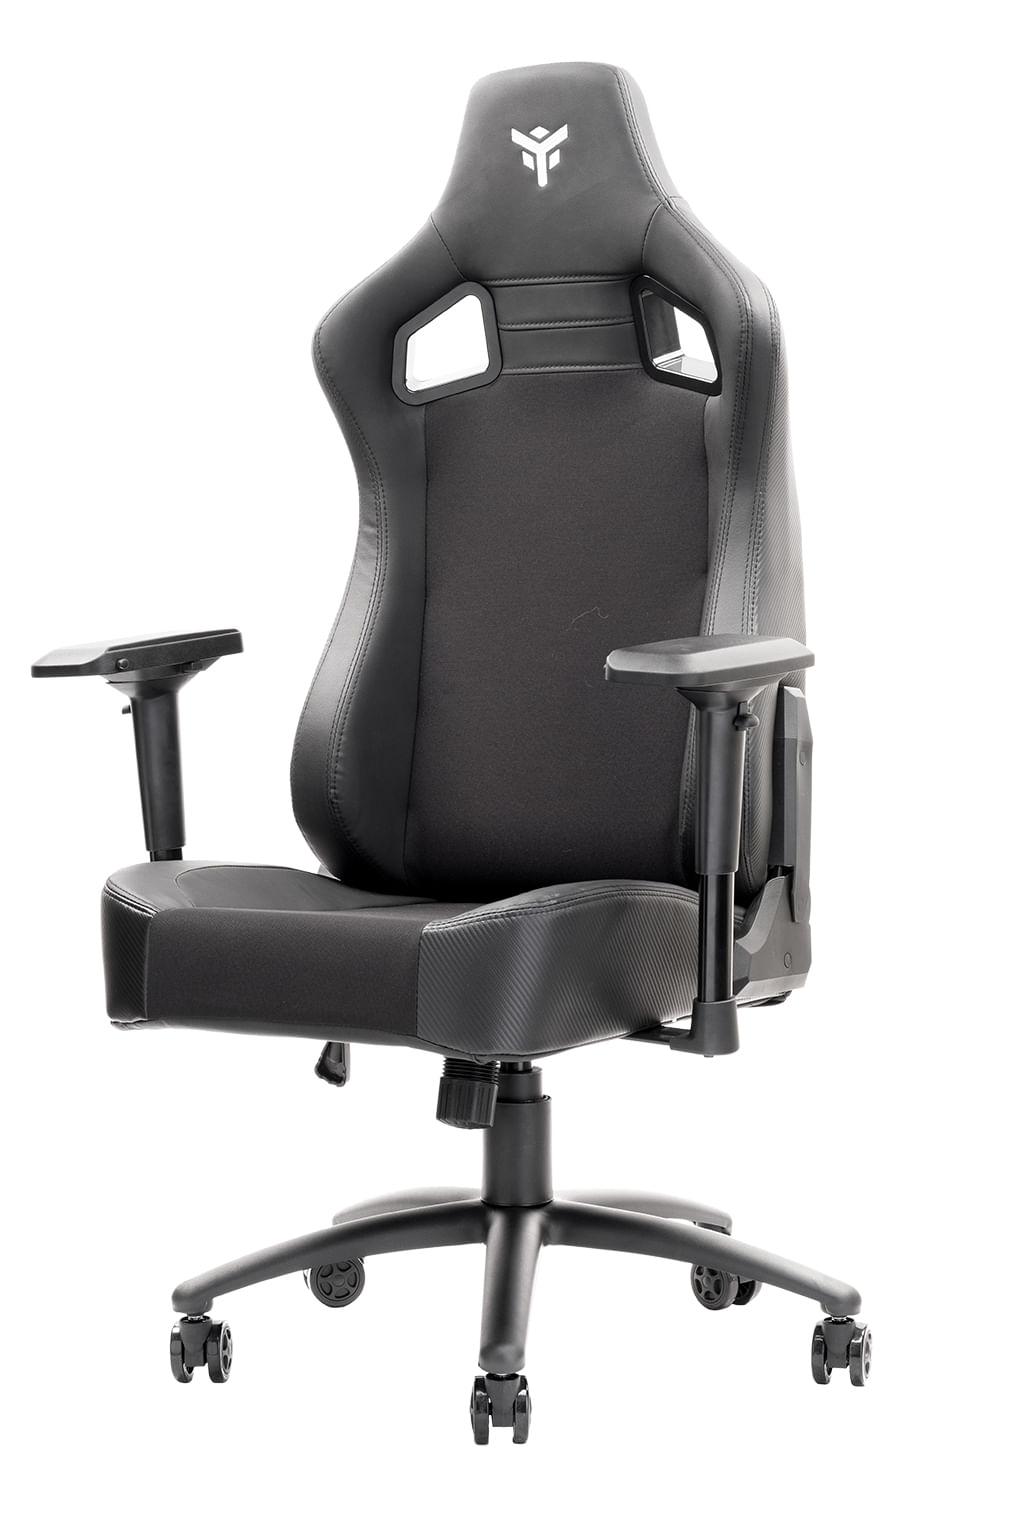 HP OMEN by Citadel Gaming Chair Sedia da gaming per PC Nero, Rosso -  PagineGialle Shop